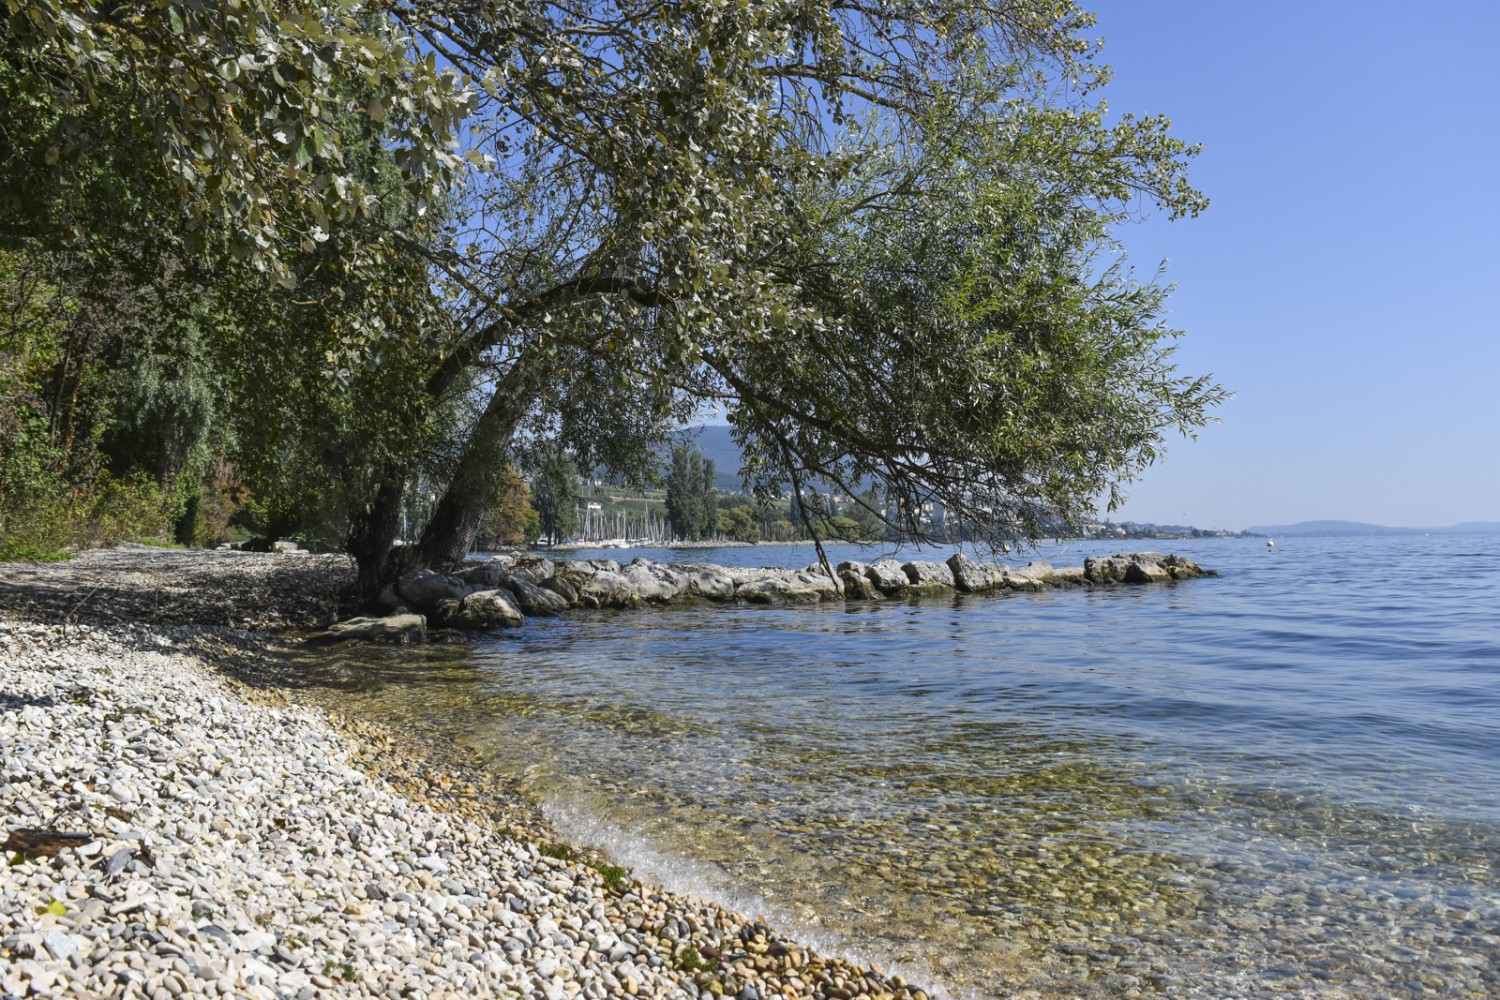 Ambiance de vacances au bord du lac de Neuchâtel. Photo: Nathalie Stöckli